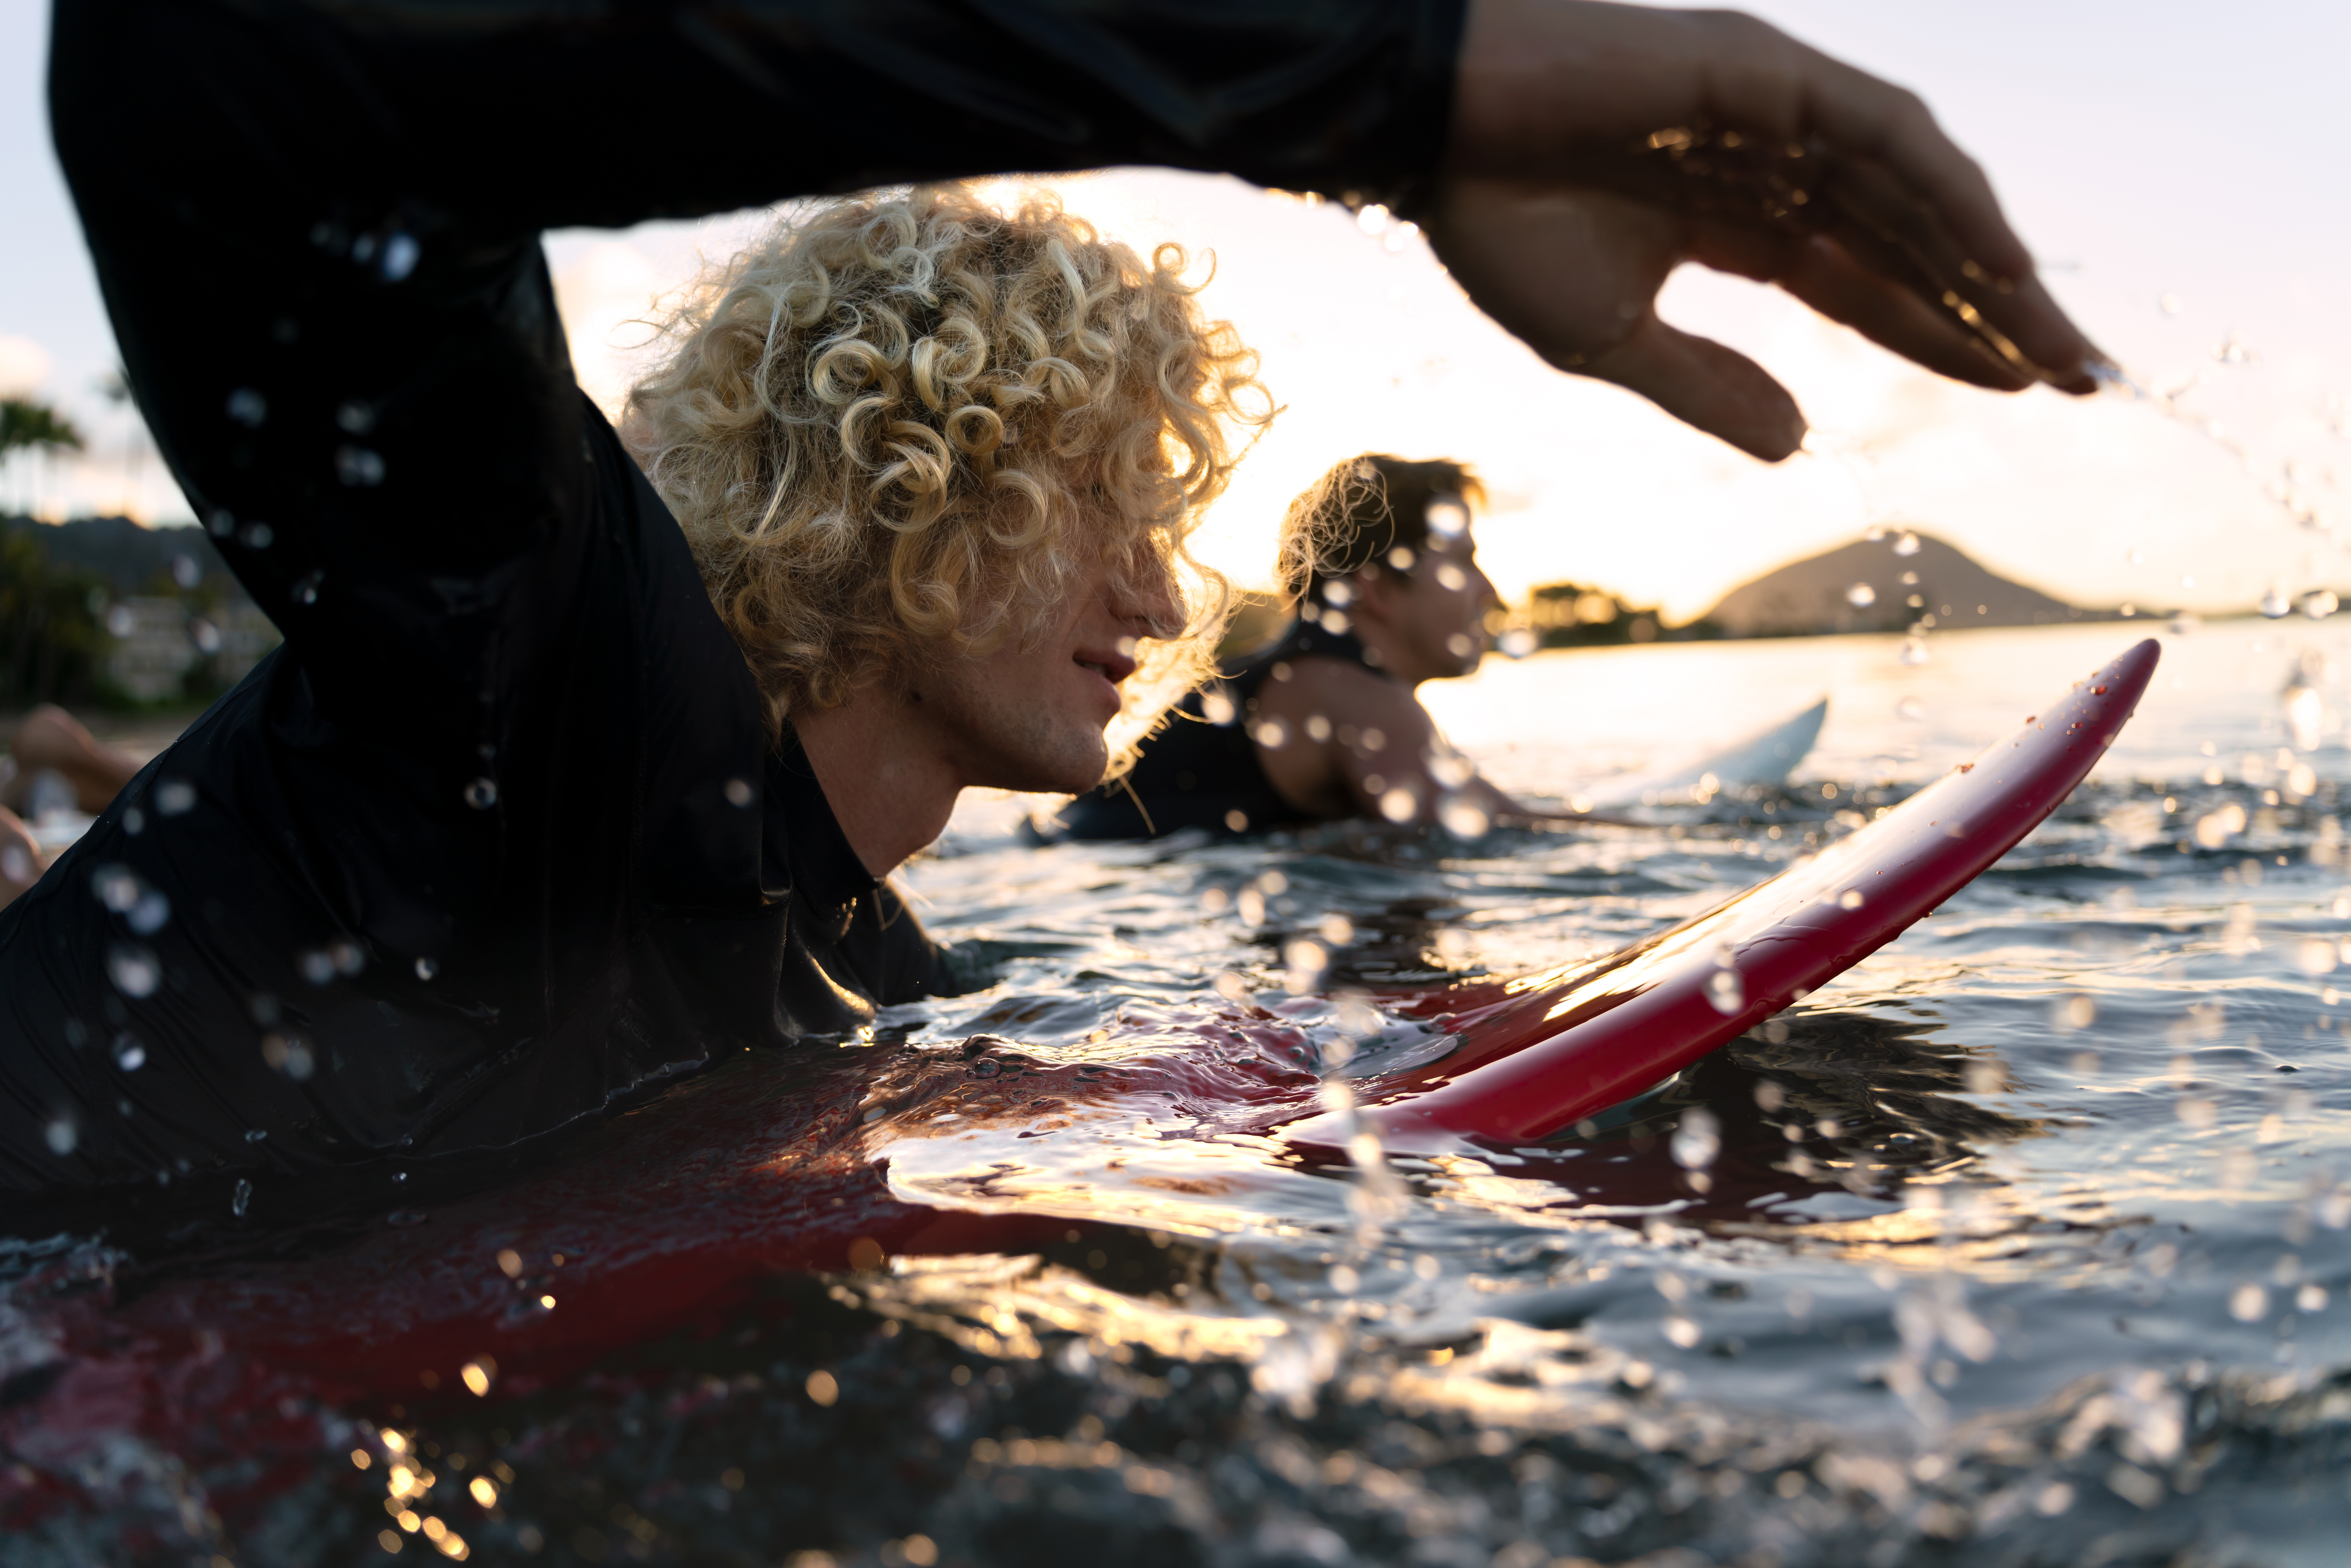 Fotka surfařů focená s objektivem Tamron